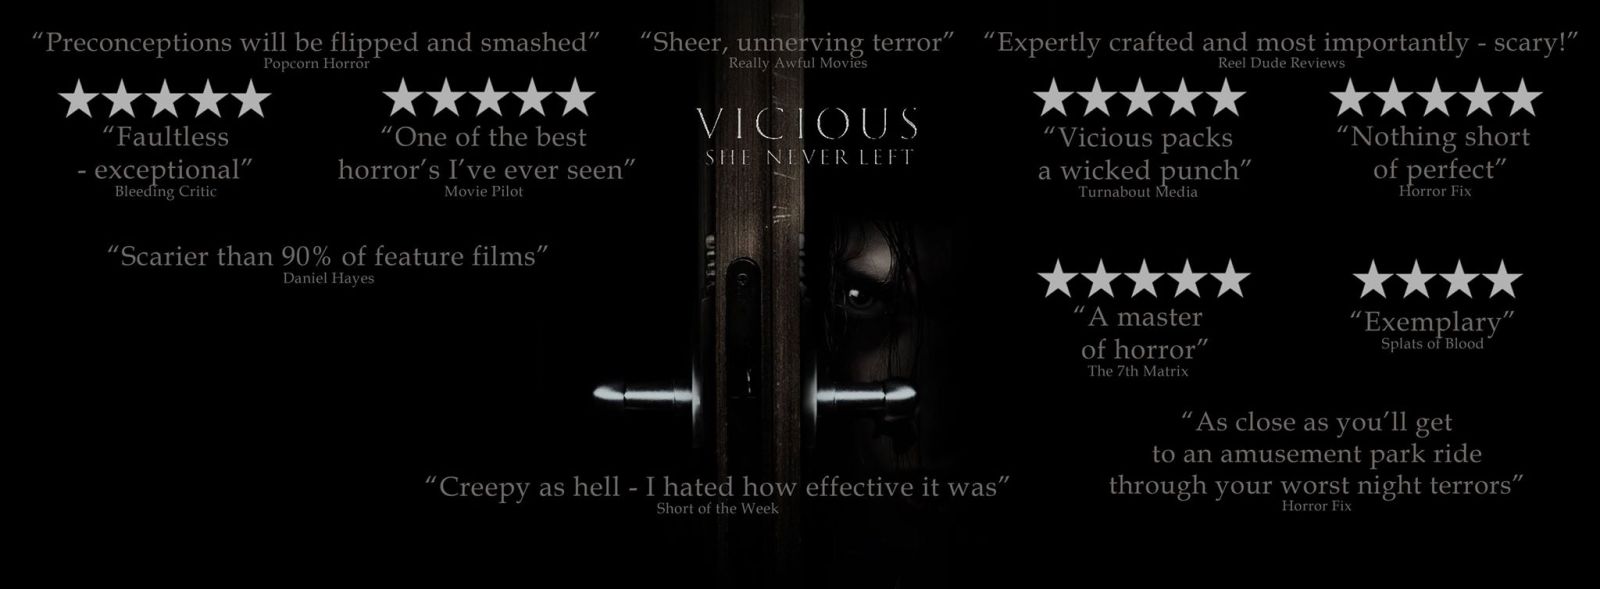 Vicious - Books Talk Back in Bristol